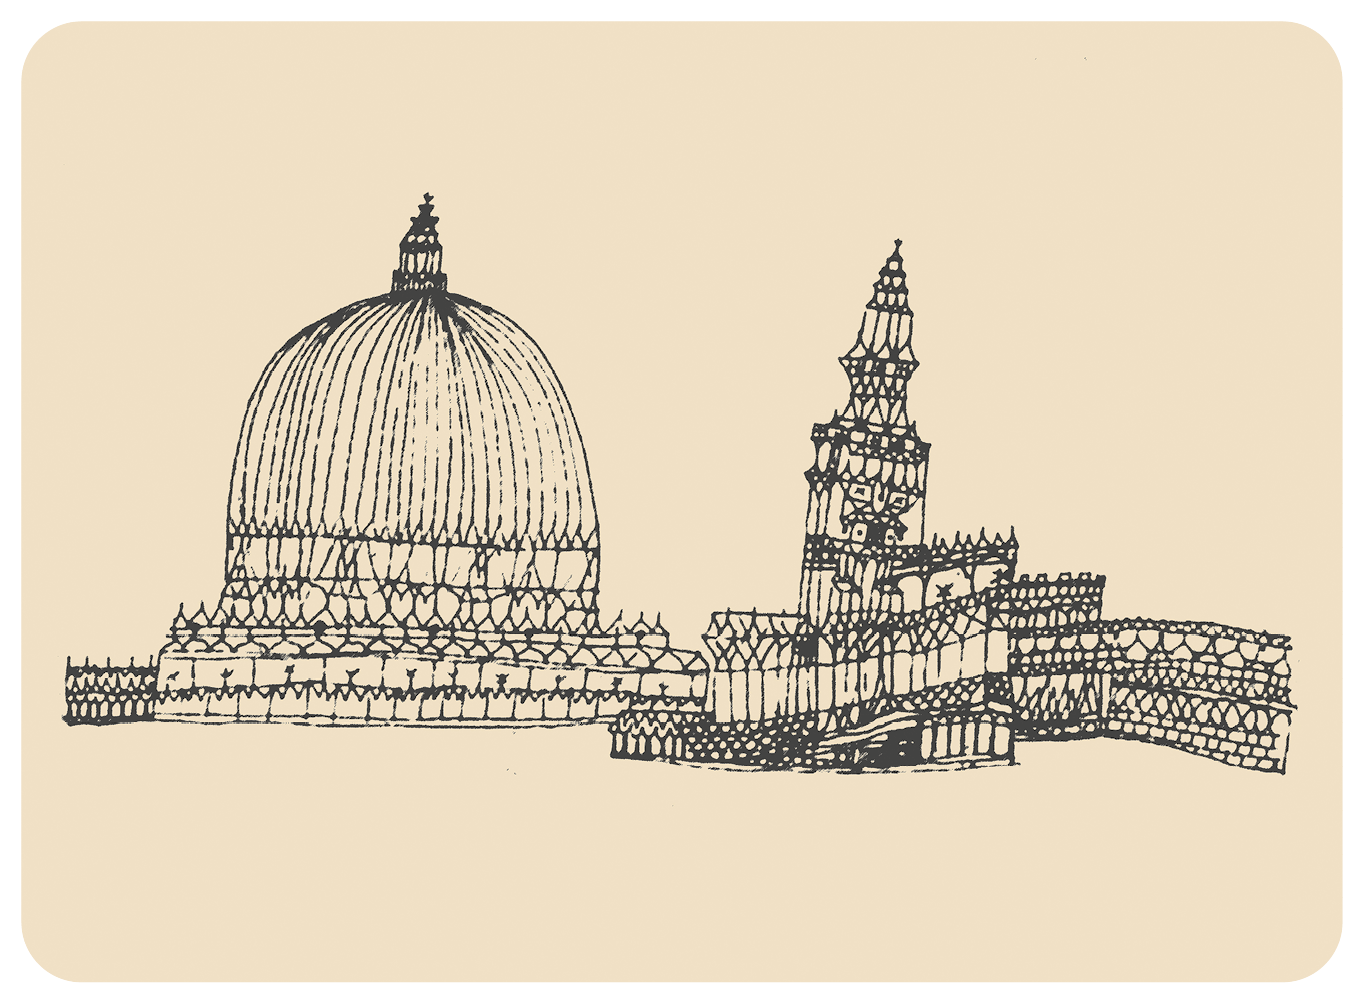 Pintura em preto e branco. Com linhas pretas e finas, à esquerda, desenho de uma construção com teto de cúpula; à direita, uma construção que apresenta uma torre central com teto piramidal.